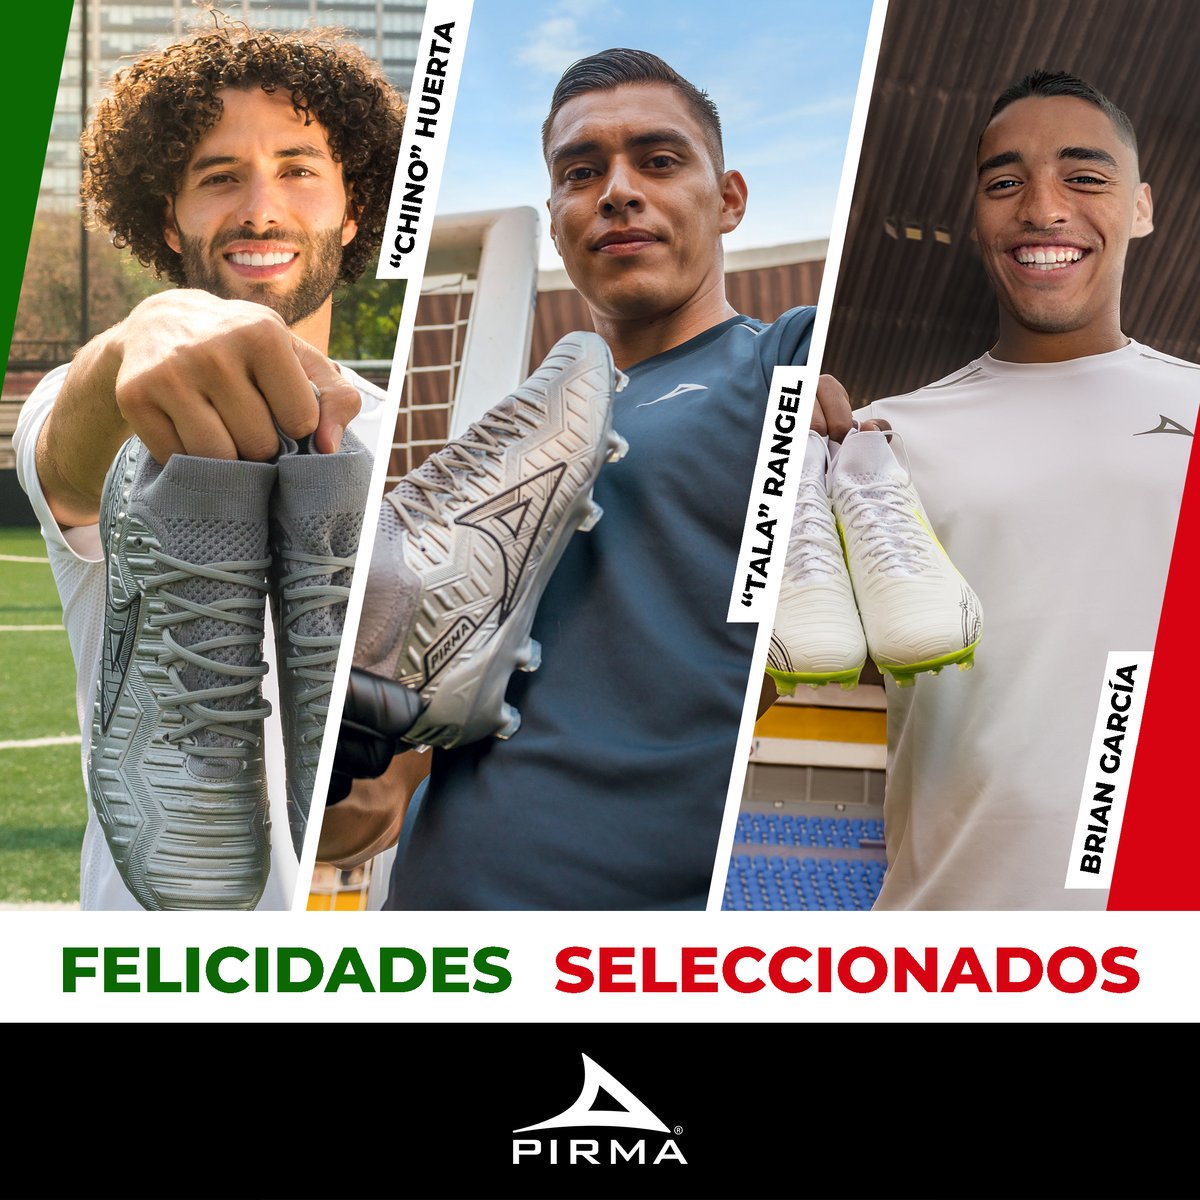 ¡Orgullo nacional! 🇲🇽 Felicidades a los embajadores Brian Alberto García (Tatito), Raúl Rangel (Tala) y Chino Huerta por ser convocados a representar a México en la selección nacional. ¡Que sigan brillando en el campo y llevando en alto el nombre de nuestro país! 💪 ⚽